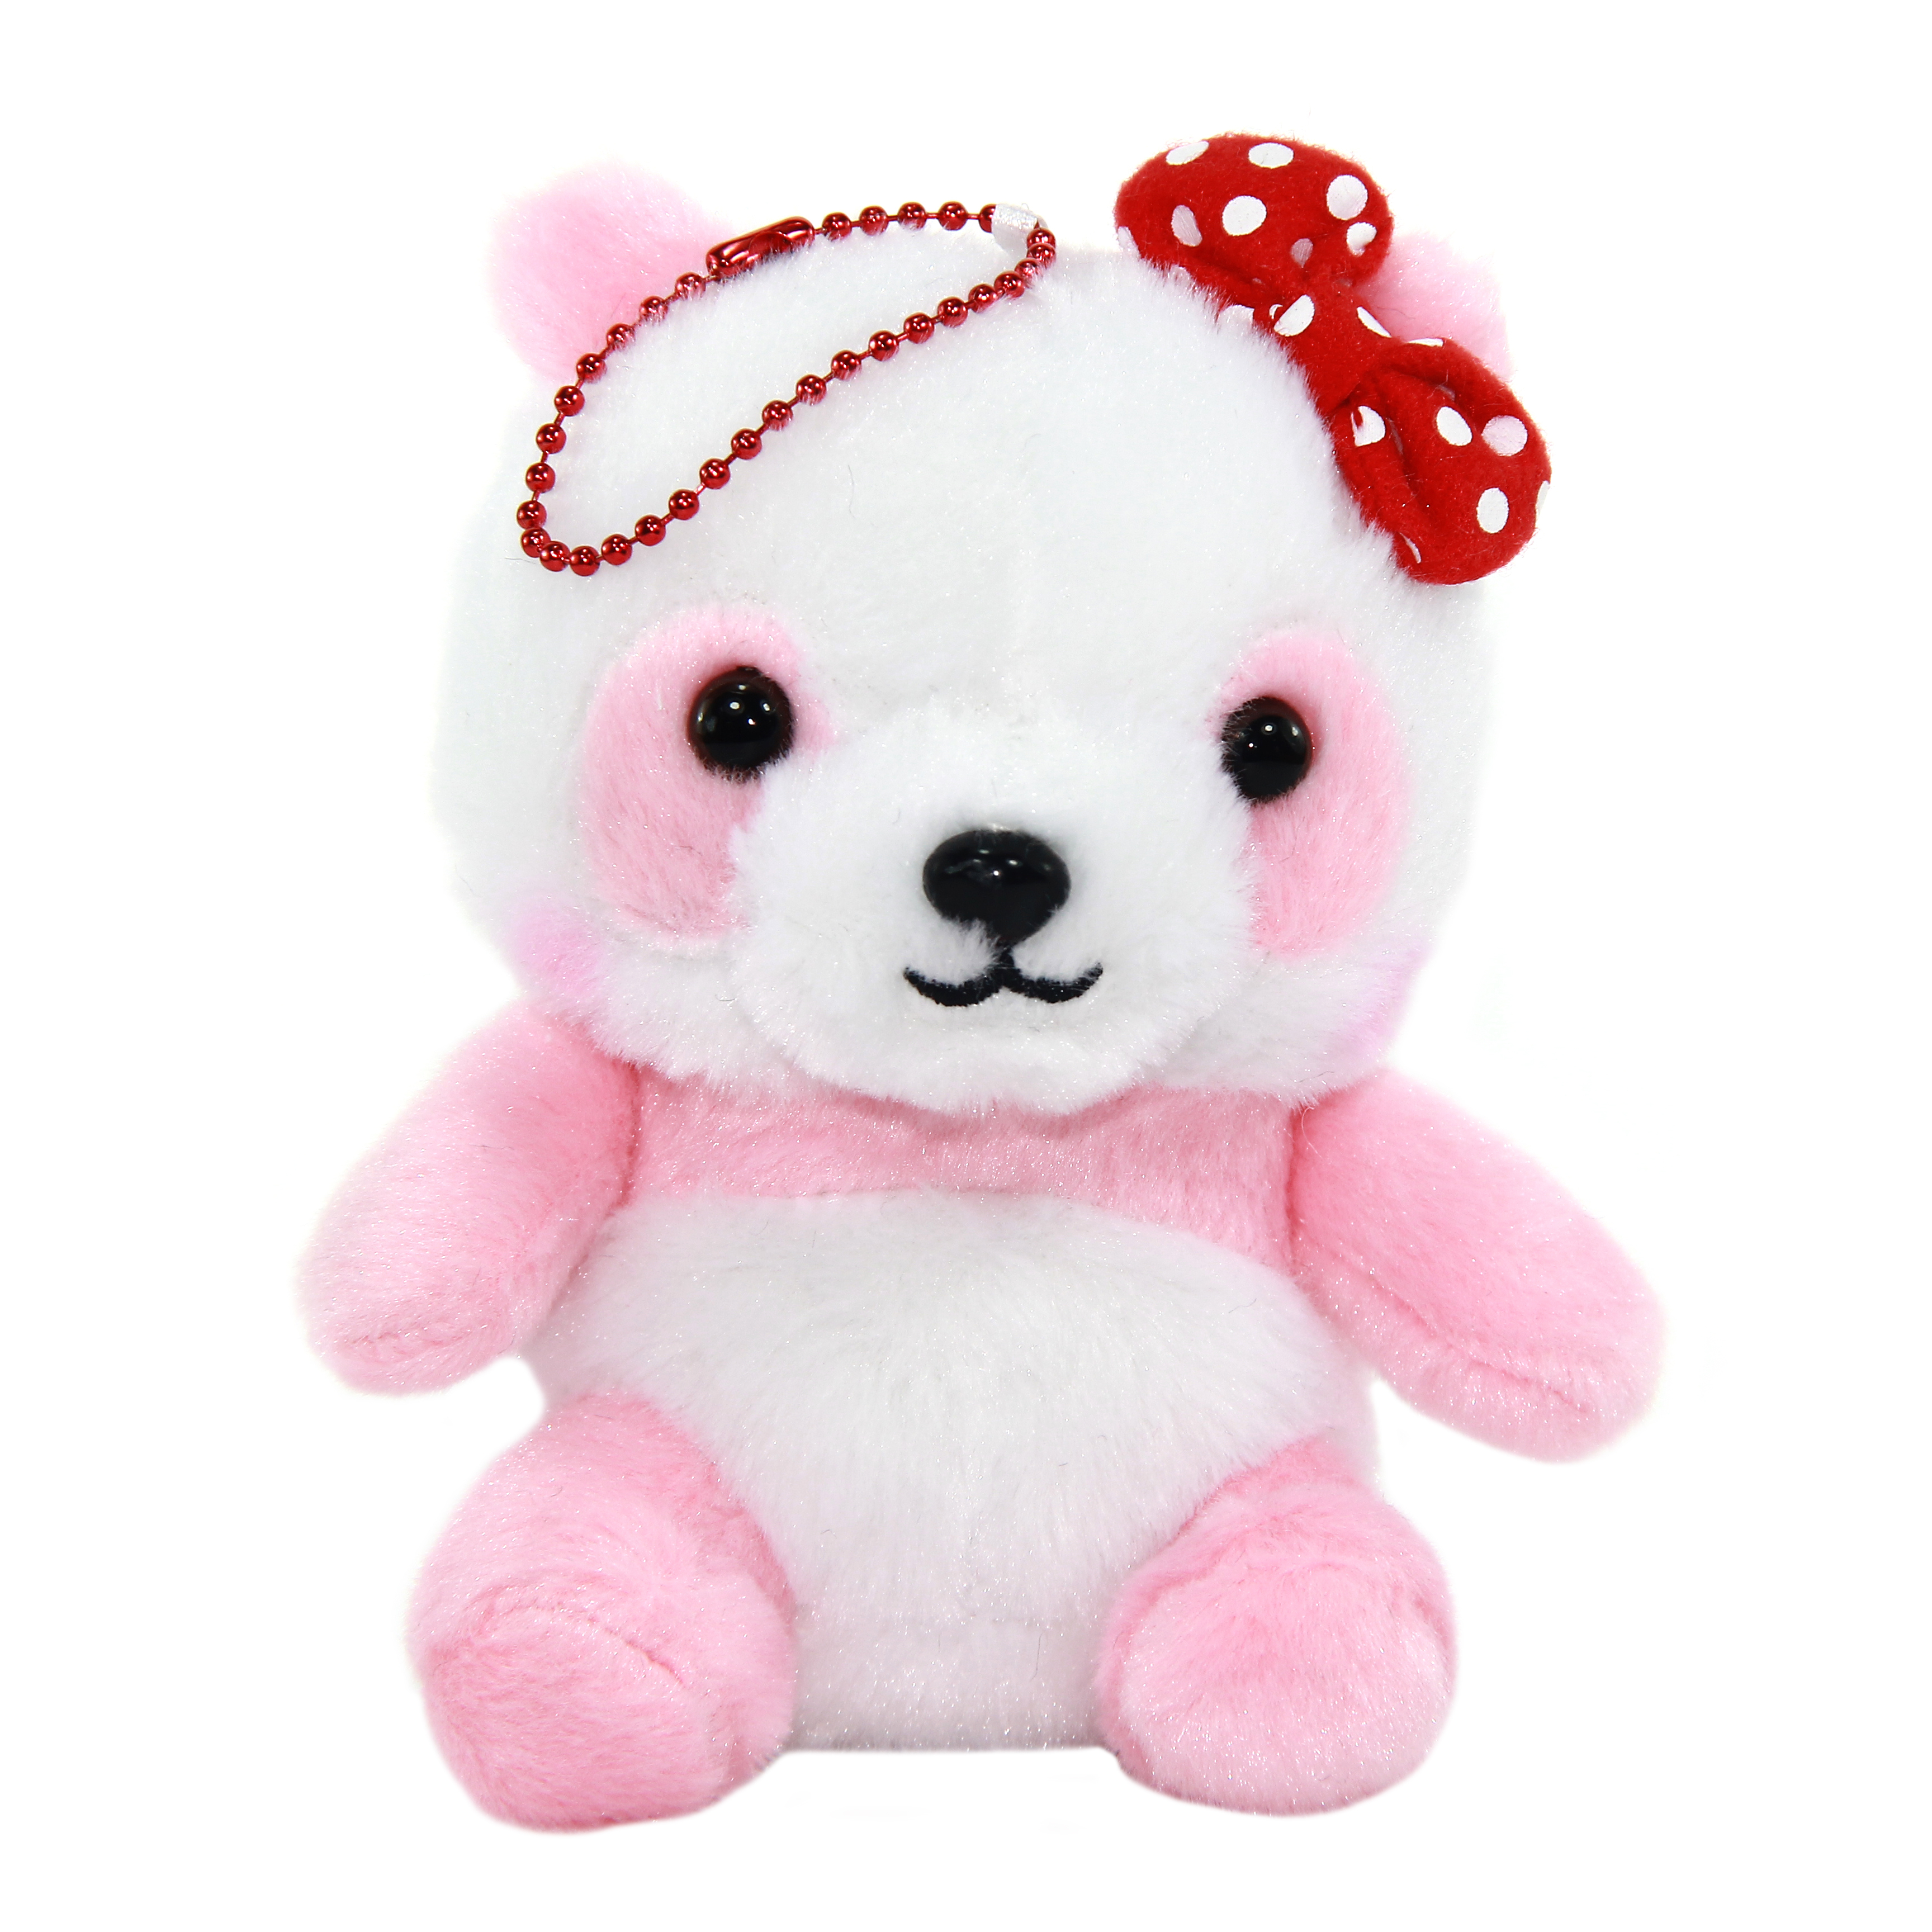 Plush Panda, Amuse, Honwaka Panda Baby, Strawberry Milk, Pink / White, 5 Inches